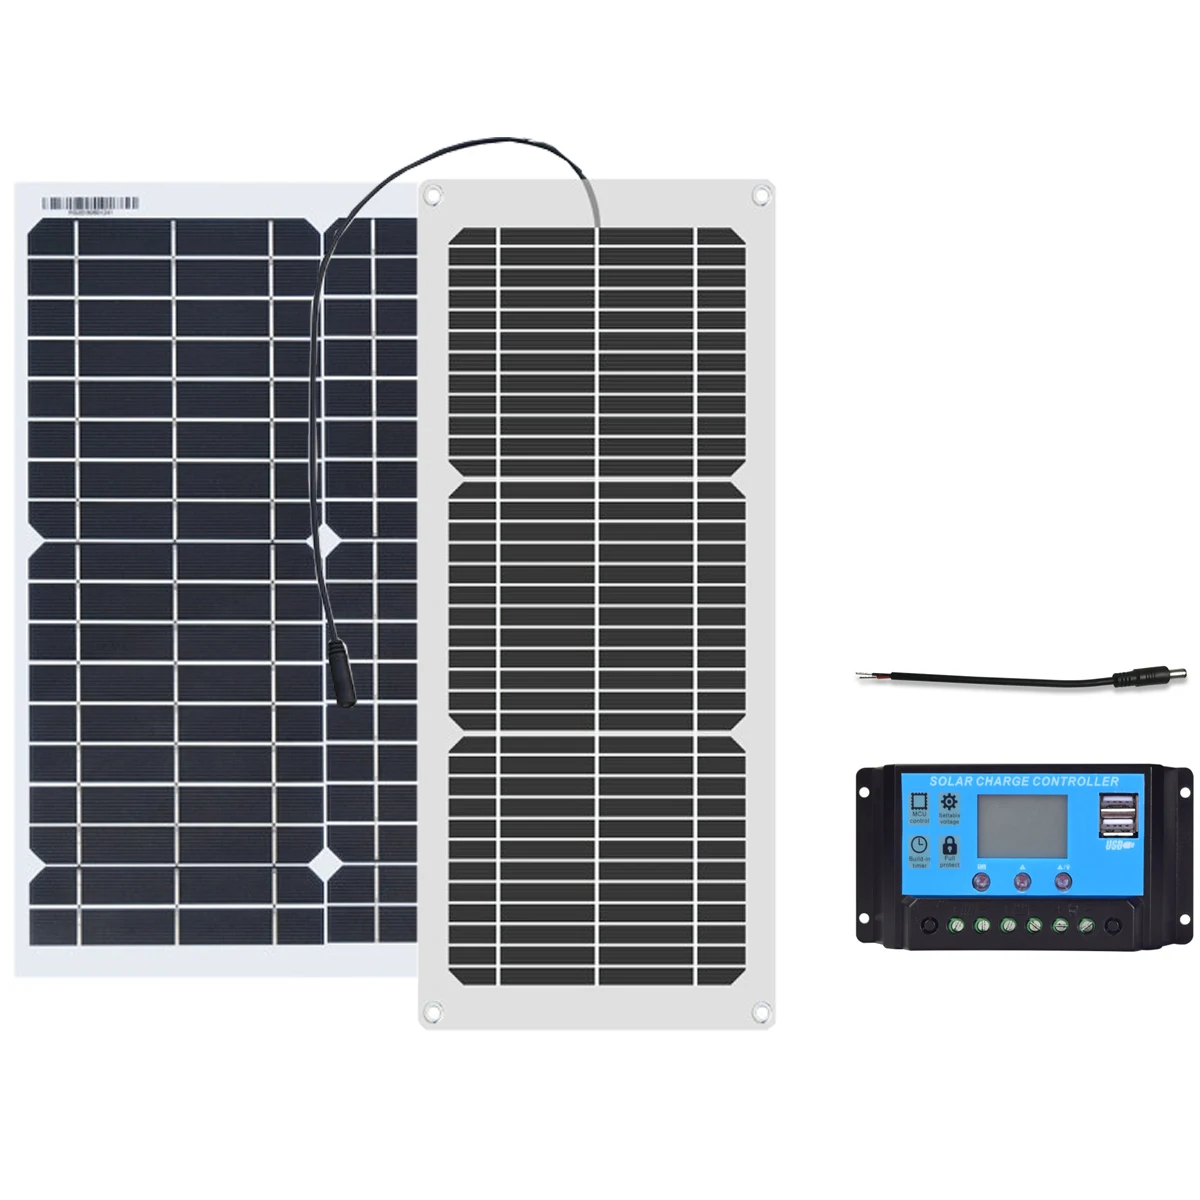 Xinpuguang flexible solar panel cell 10w 20w with 12v 10A contorller Гибкая солнечная панель 18 Вт 10 Вт 20 Вт с контроллером 10A для 12-вольтового зарядного устройства легкового автомобиля и яхты Hiking Car&Boat